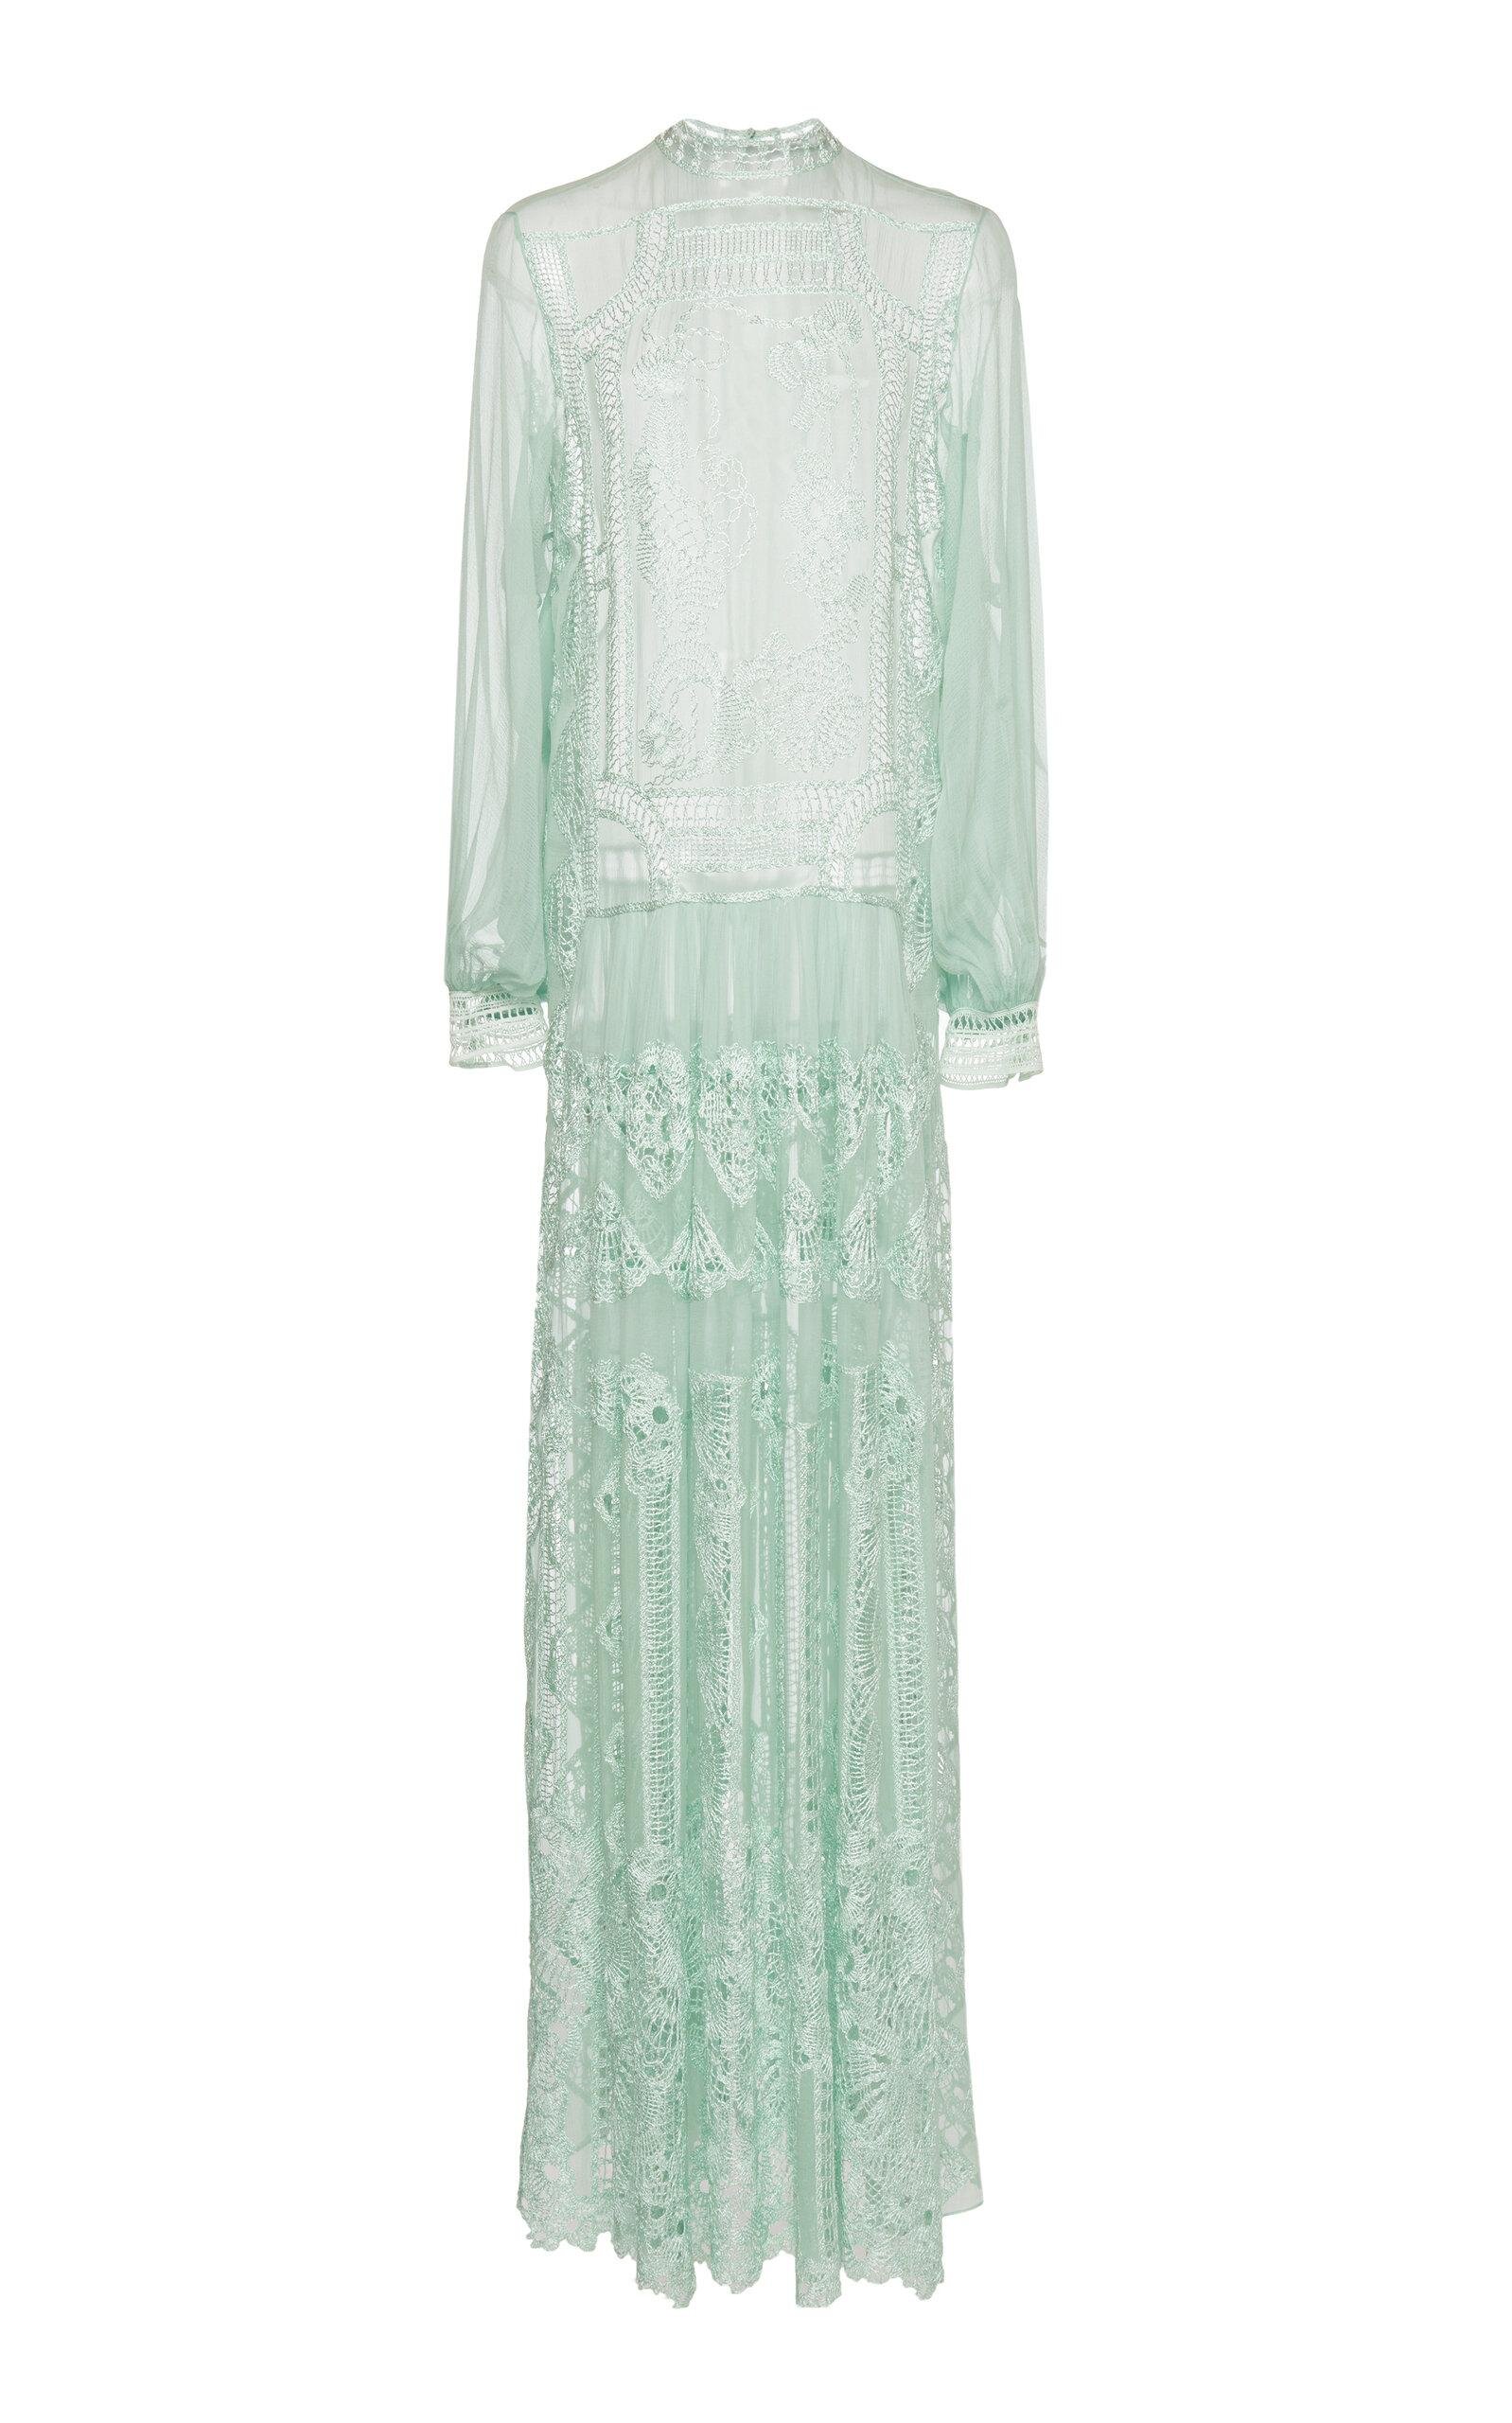 Alberta Ferretti Silk Lace Maxi Dress in Mint Green.jpg